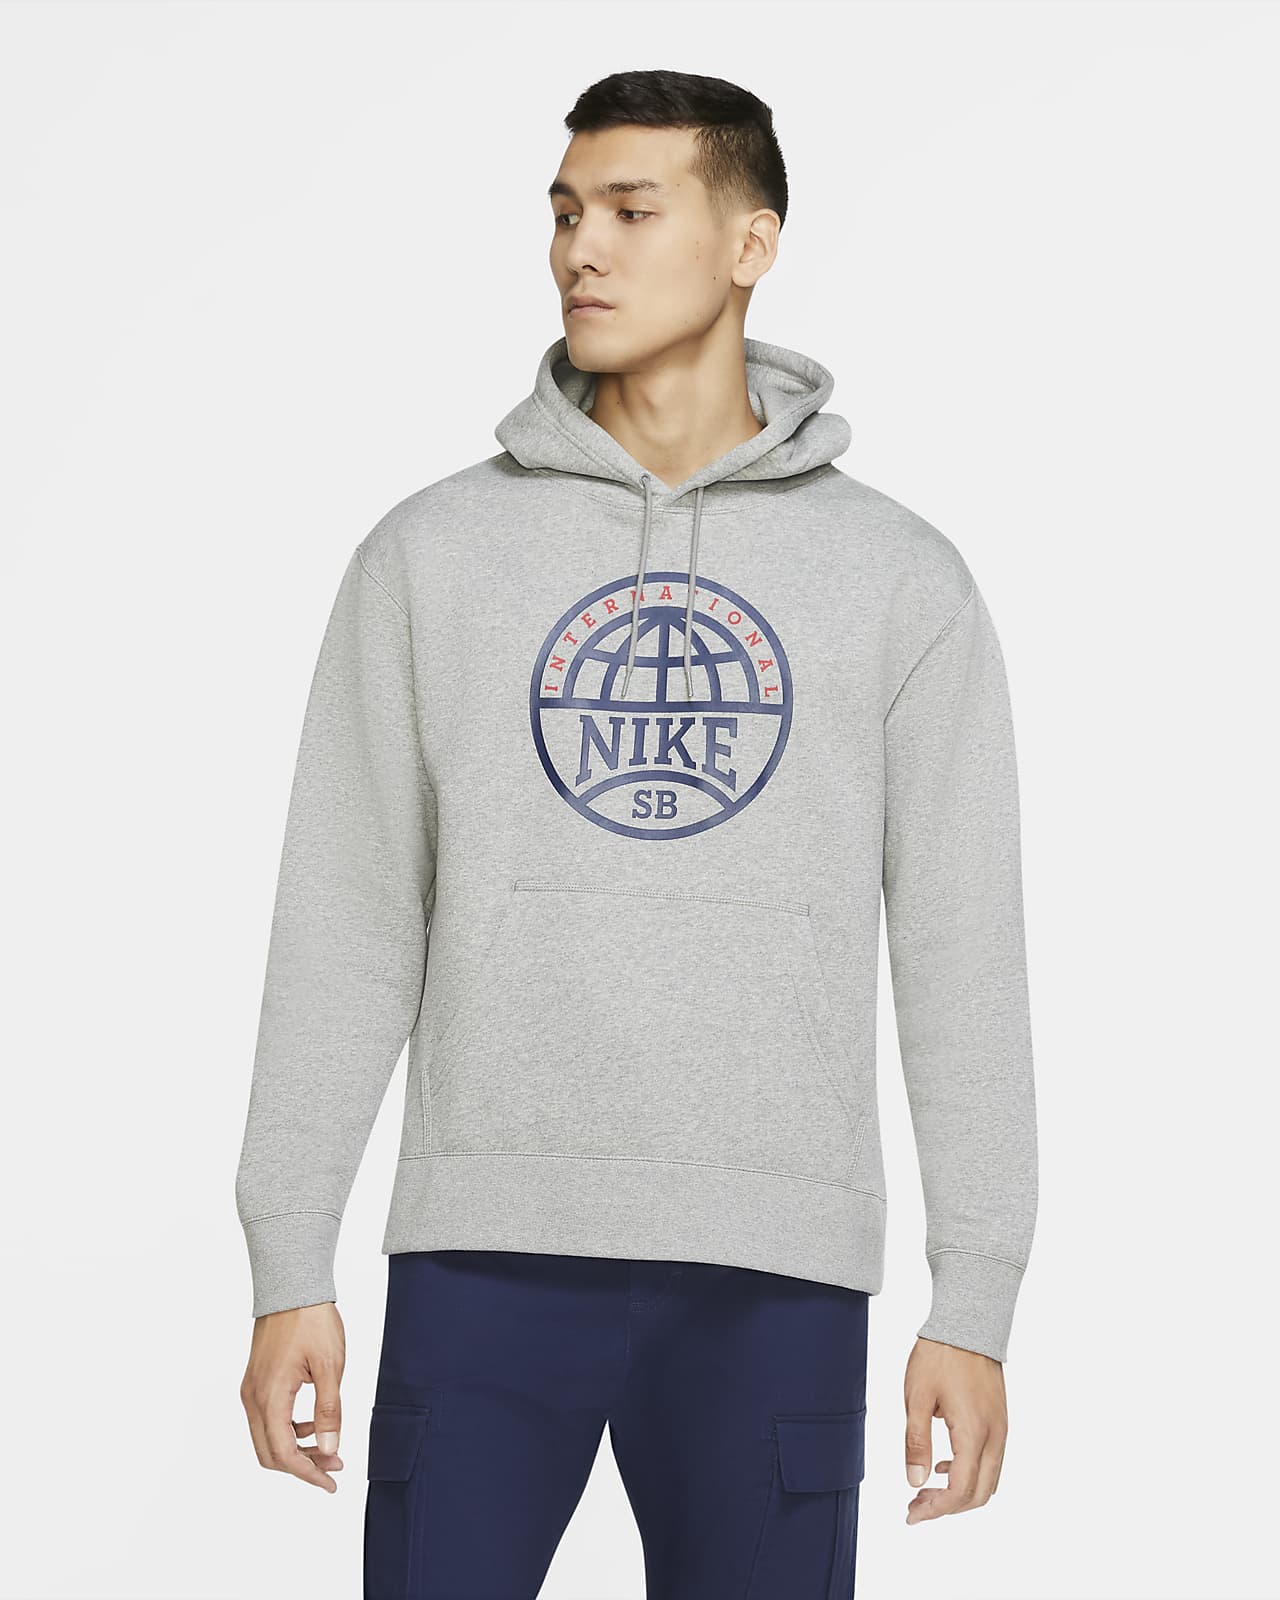 nike men's graphic hoodie